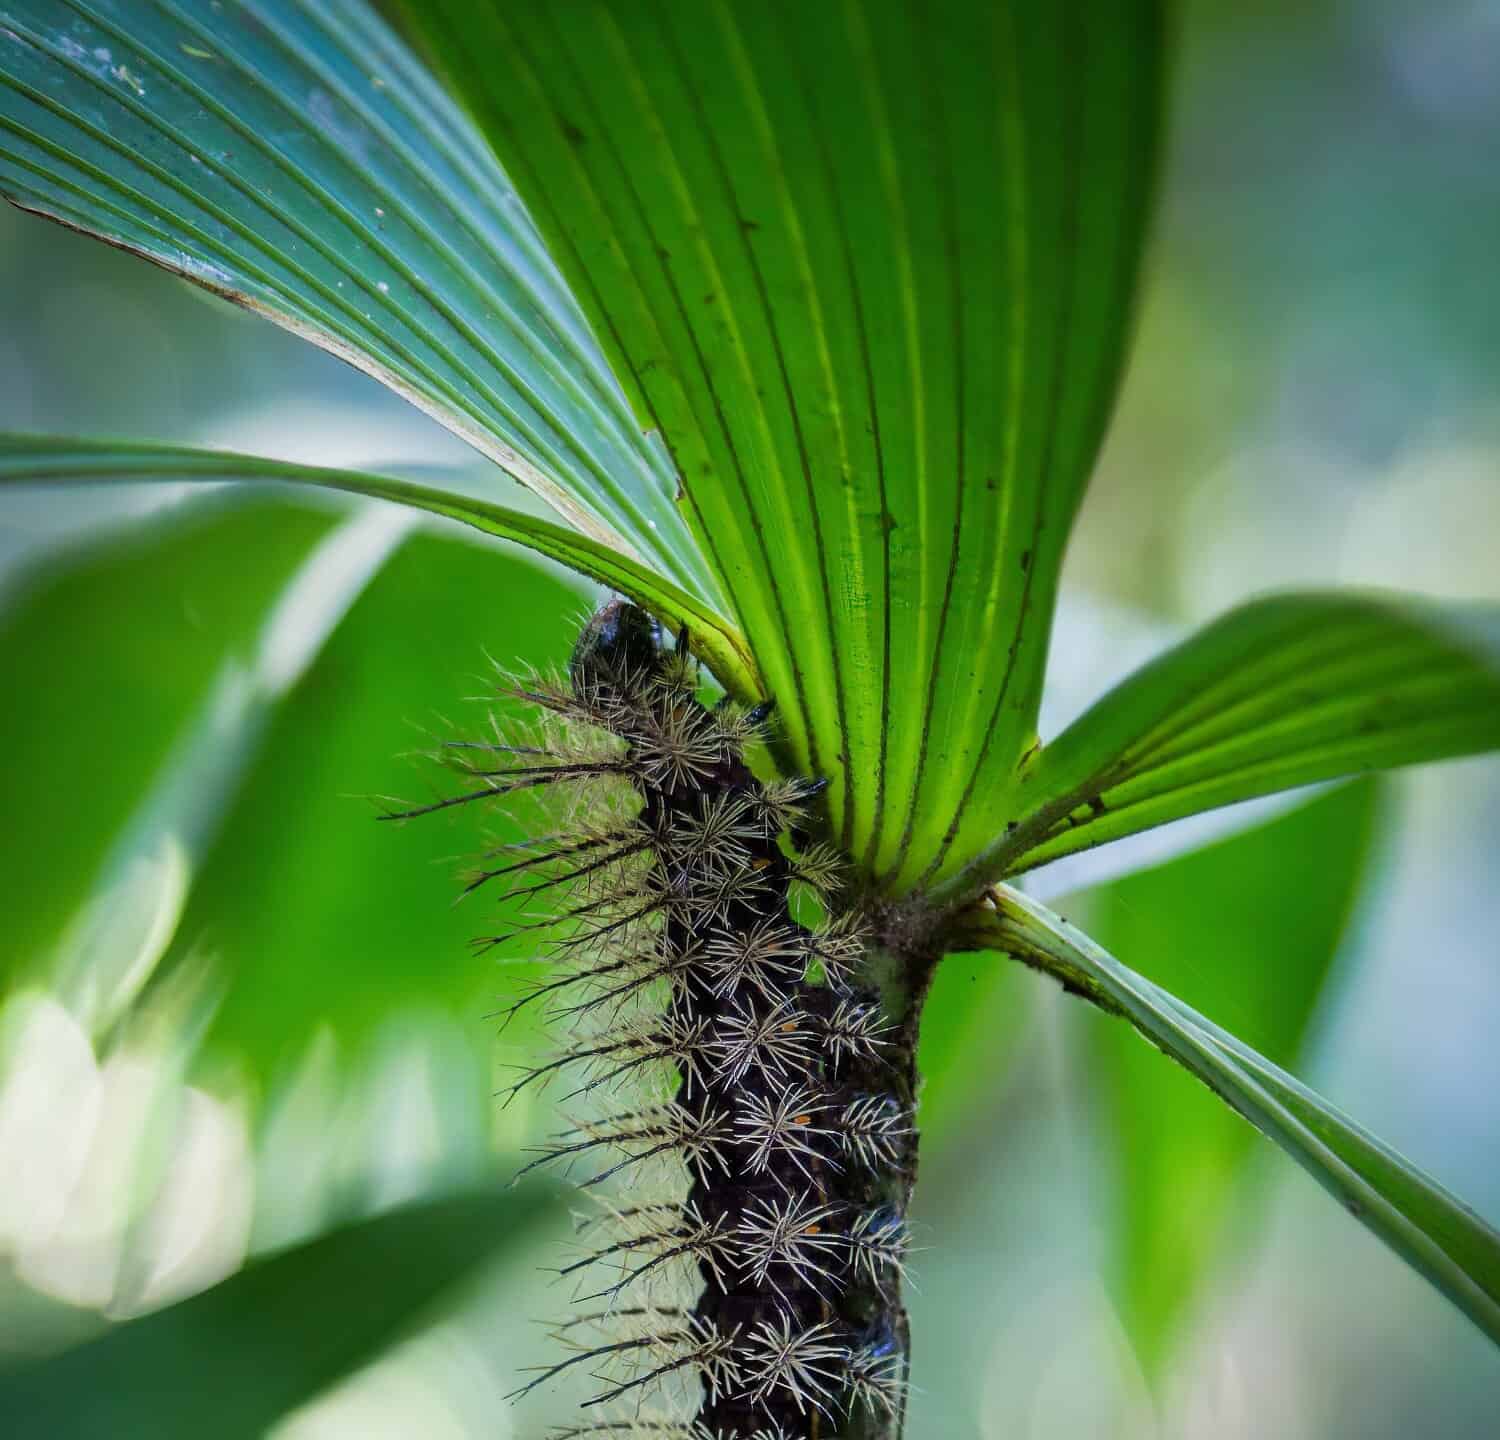 Lonomia Obliqua caterpillar climbing a plant, Costa Rica